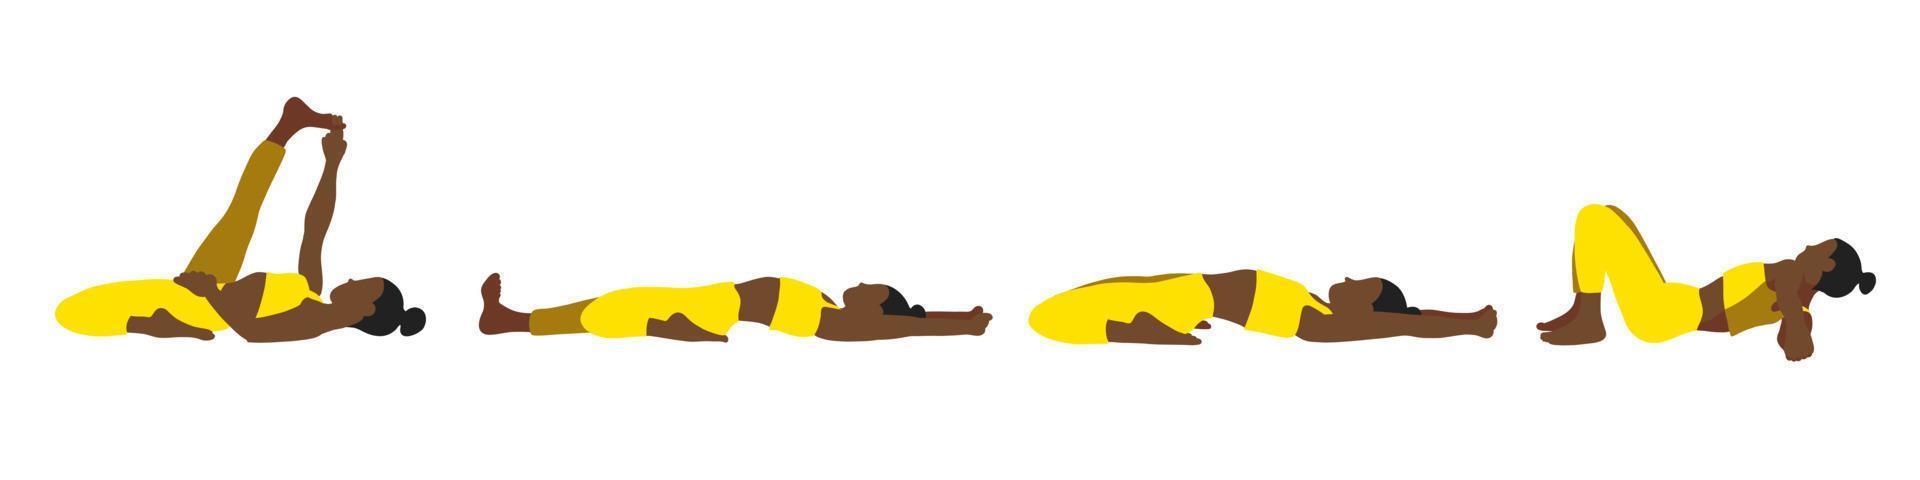 colección de posturas de yoga. afroamericano. mujer mujer niña. ilustración vectorial en estilo plano de dibujos animados aislado sobre fondo blanco. vector